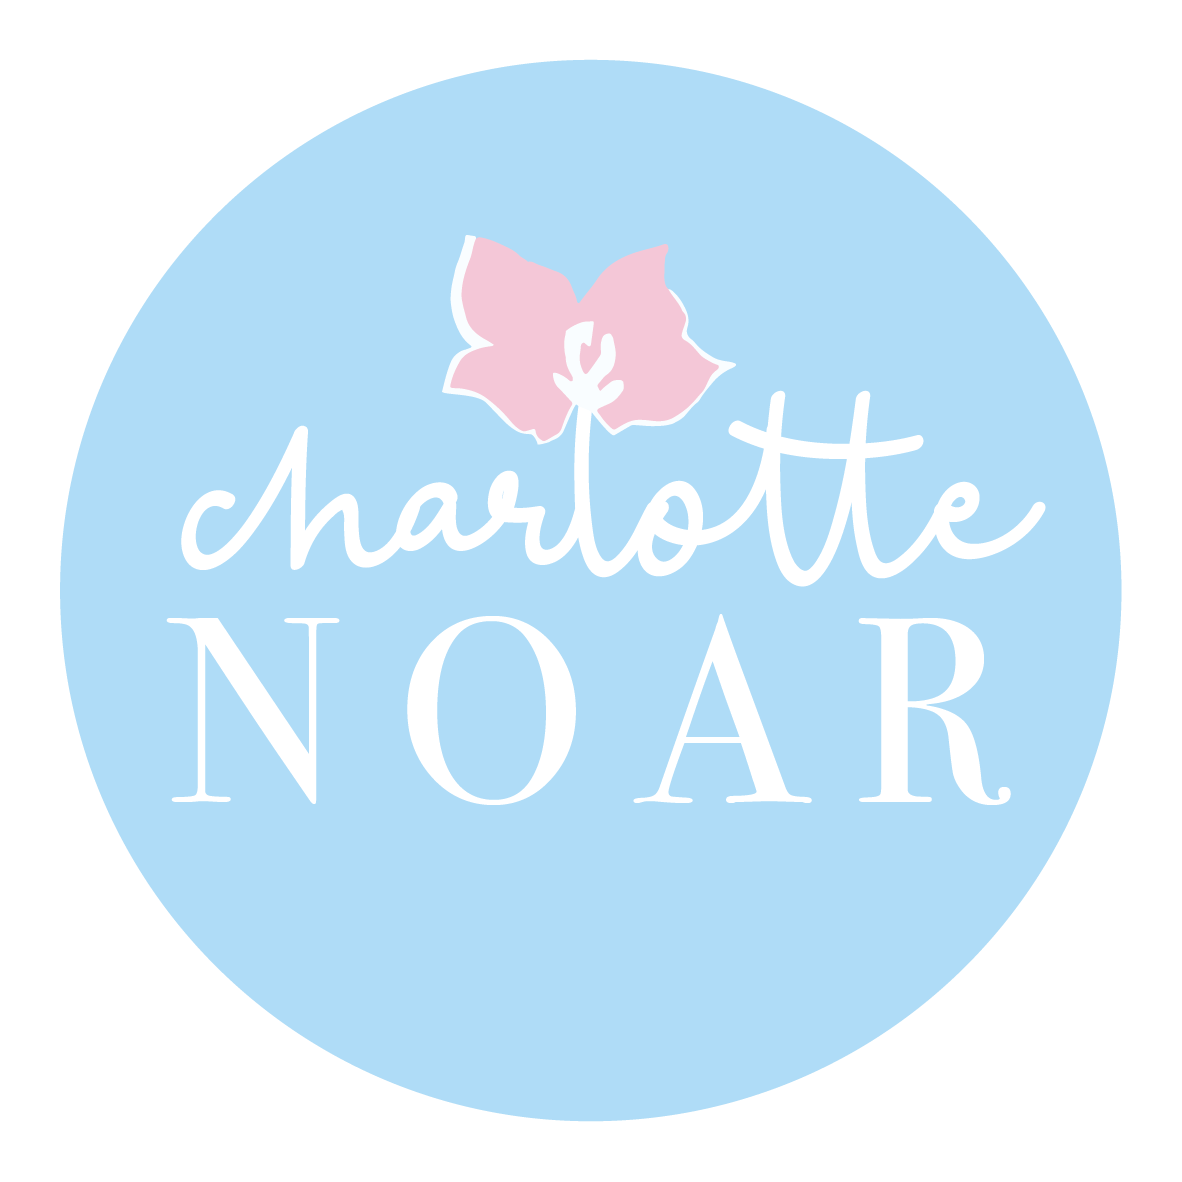 Charlotte Noar